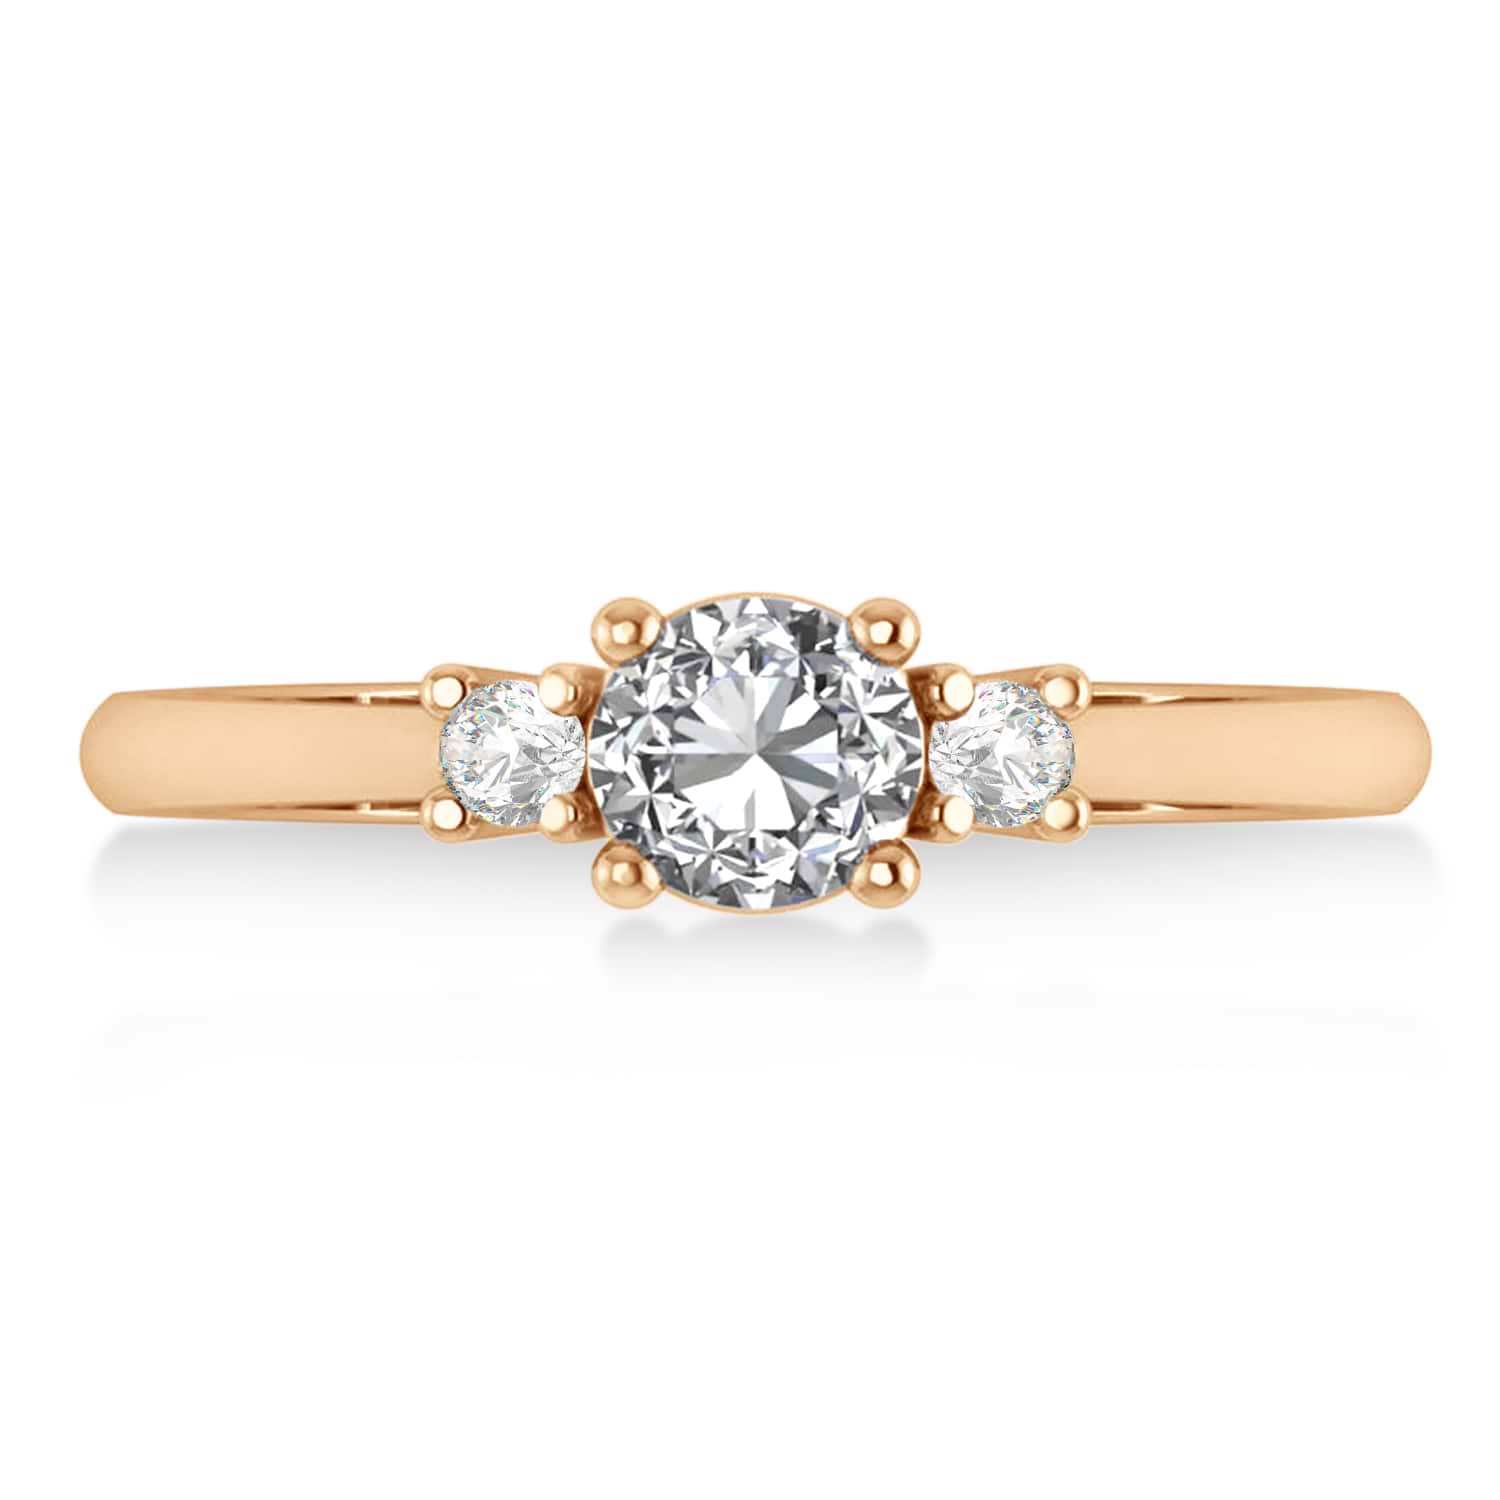 Round Diamond Three-Stone Engagement Ring 14k Rose Gold (0.60ct)